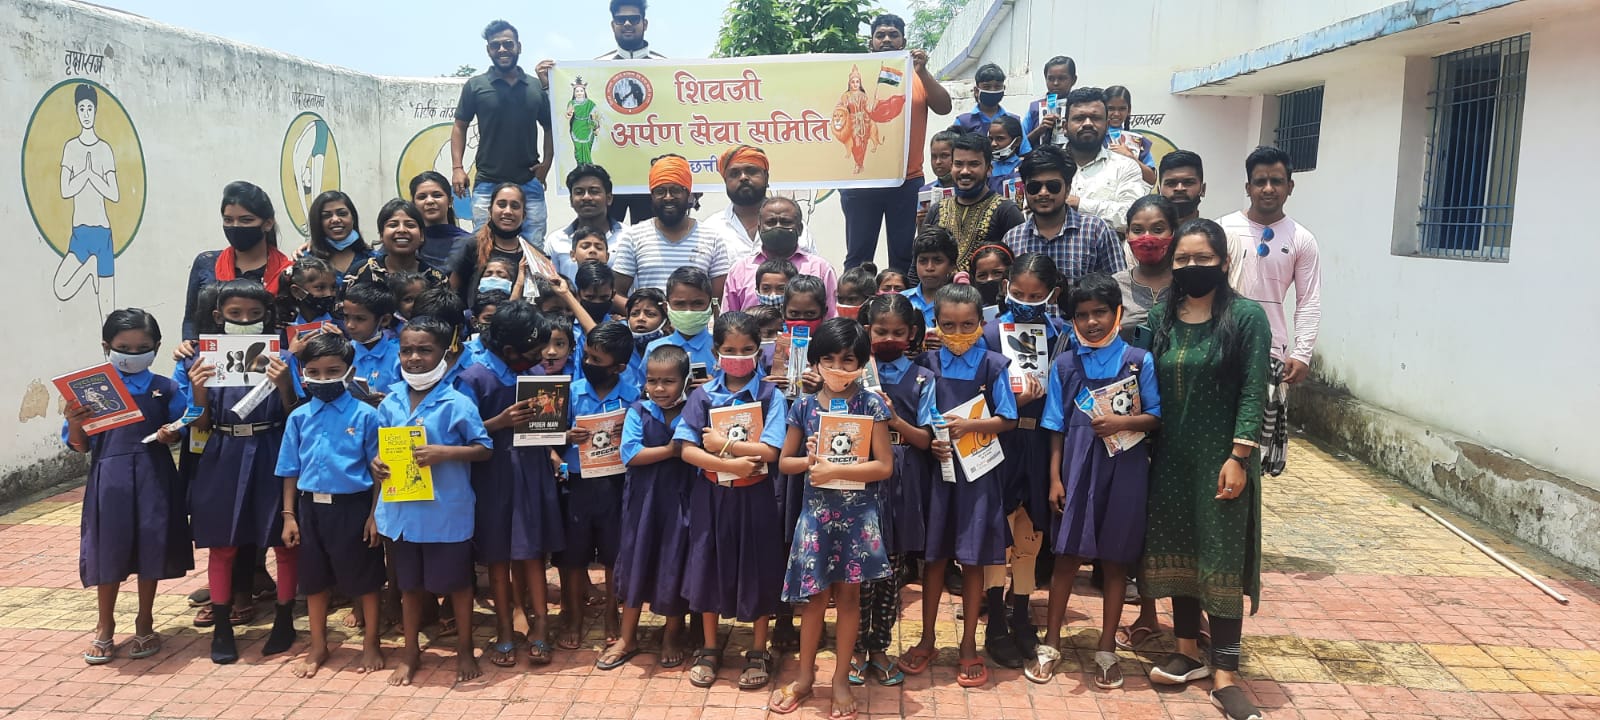 शिवजी अर्पण सेवा समिति ने स्वतंत्रता दिवस के उपलक्ष पर स्कूली बच्चों को कॉपी पेंसिल रबर किए वितरित